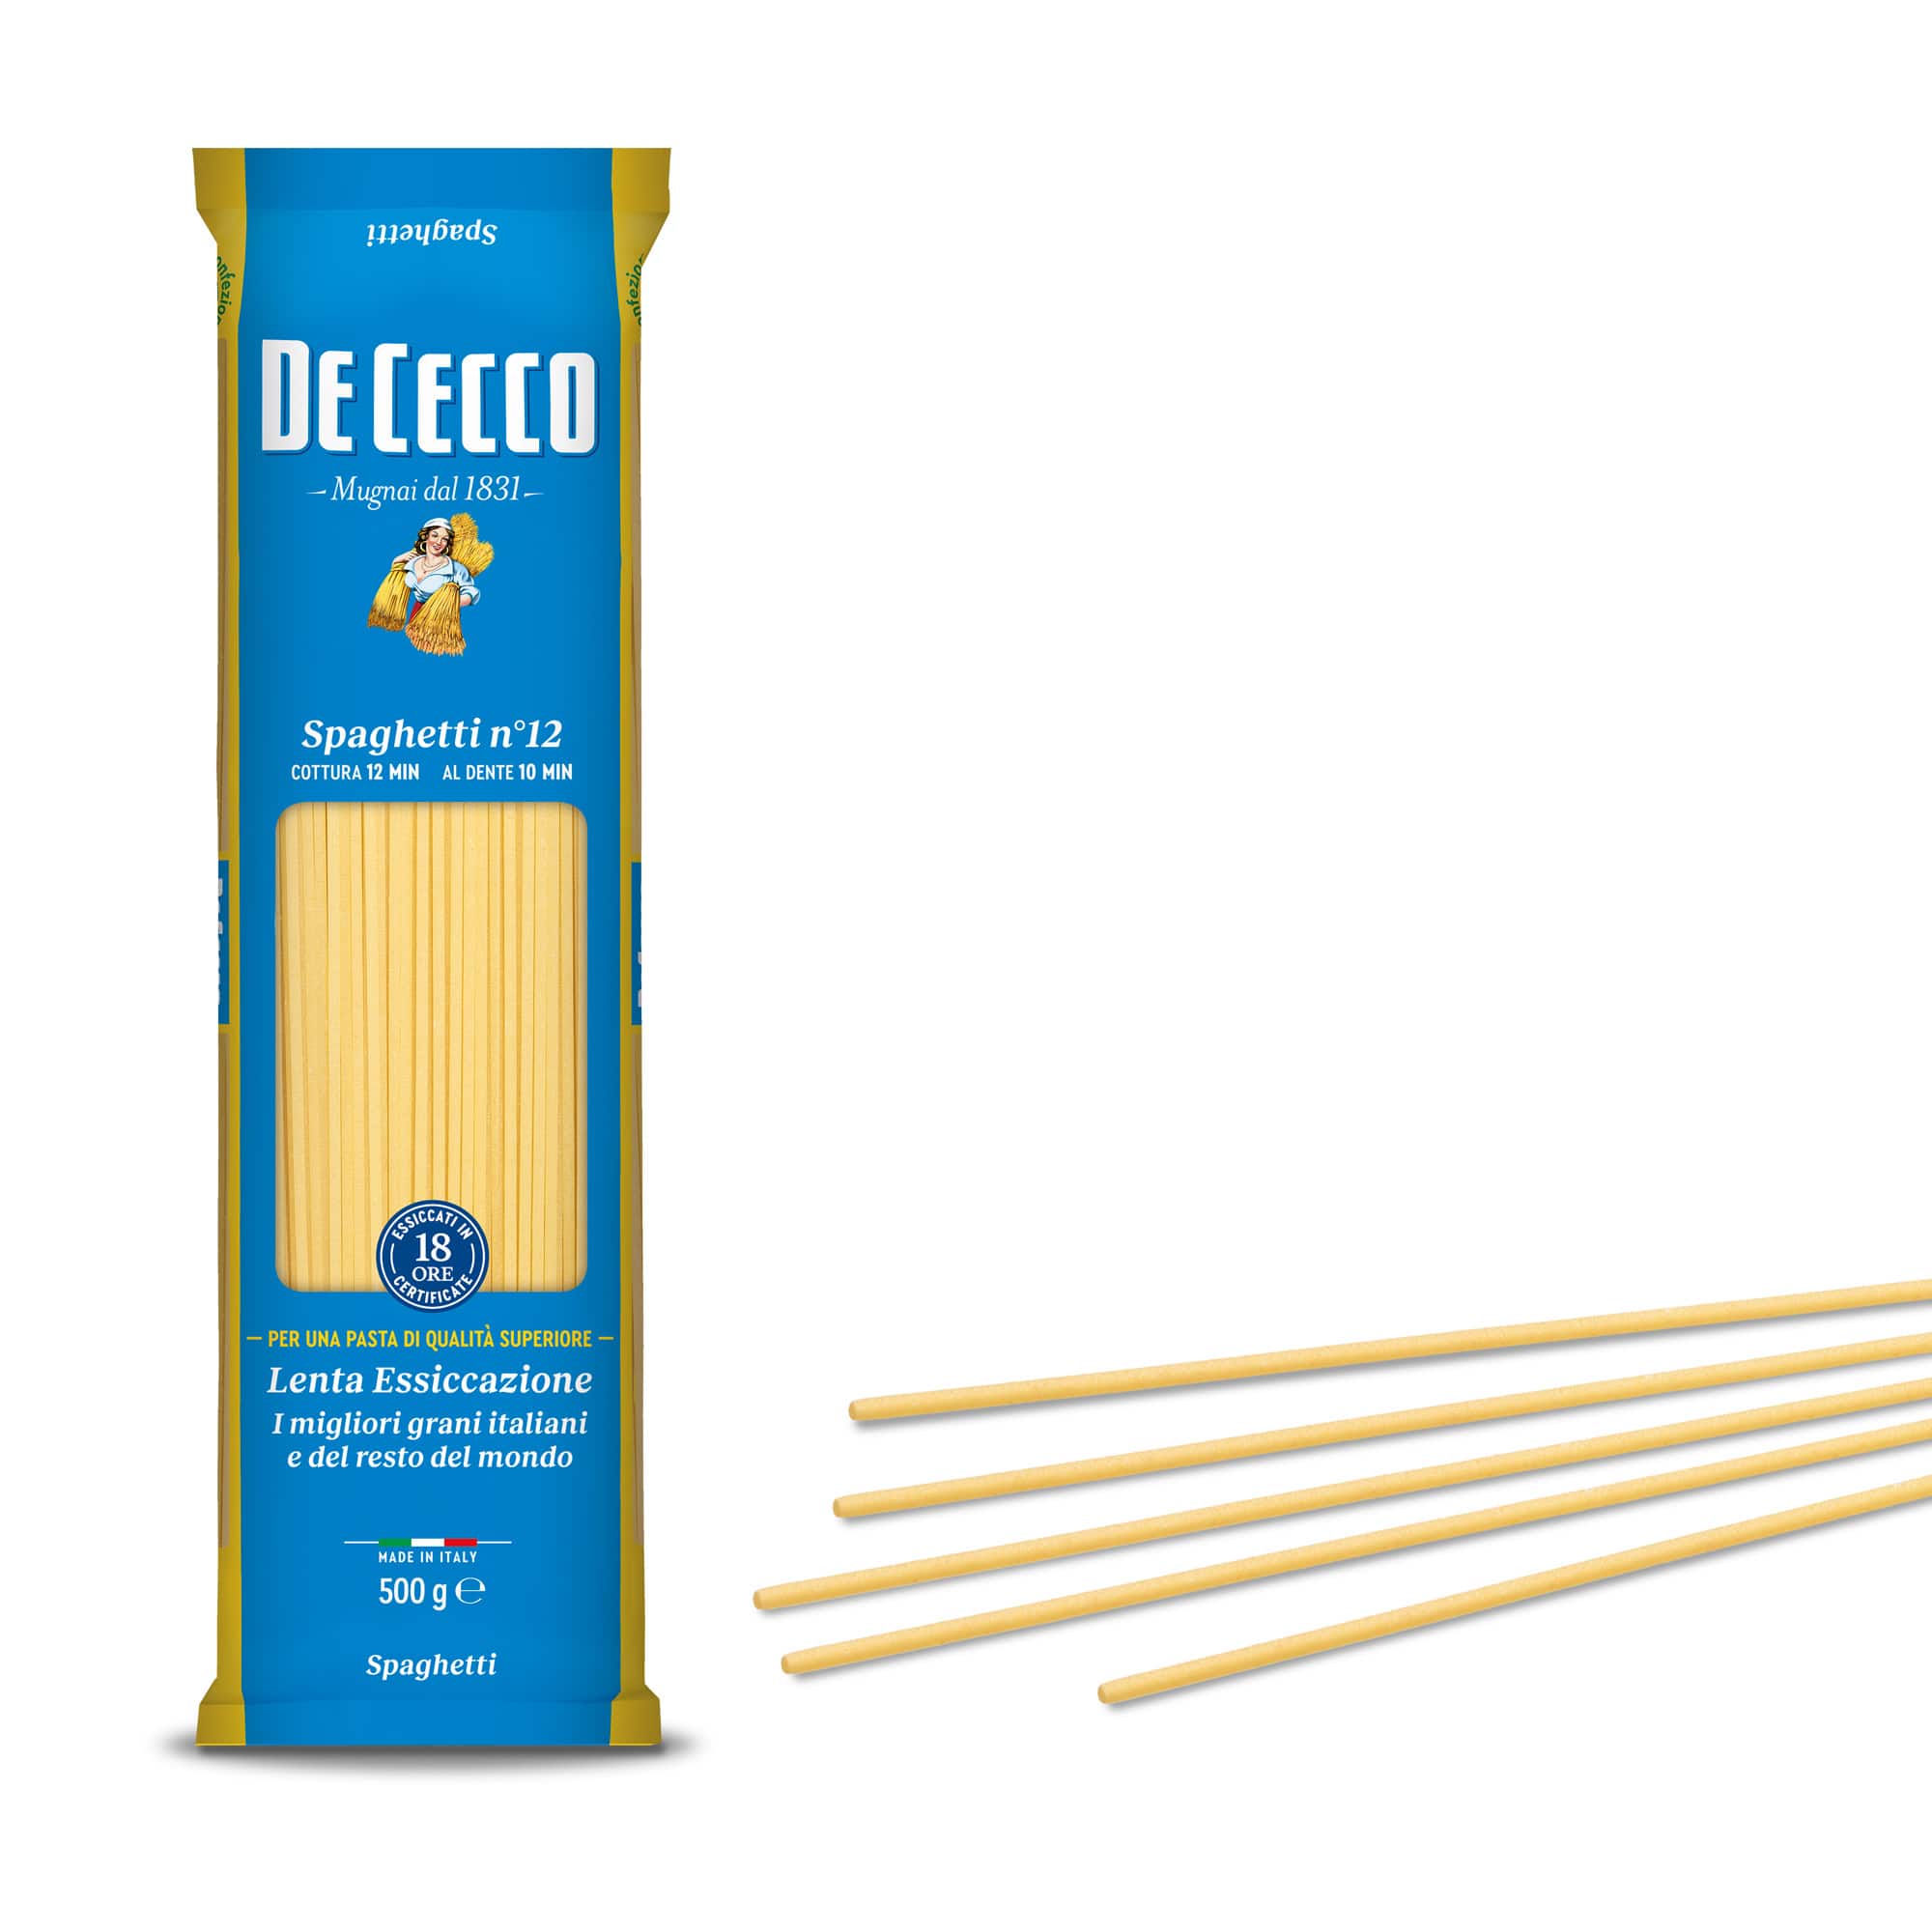 De Cecco Spaghetti Nr 12, 500g